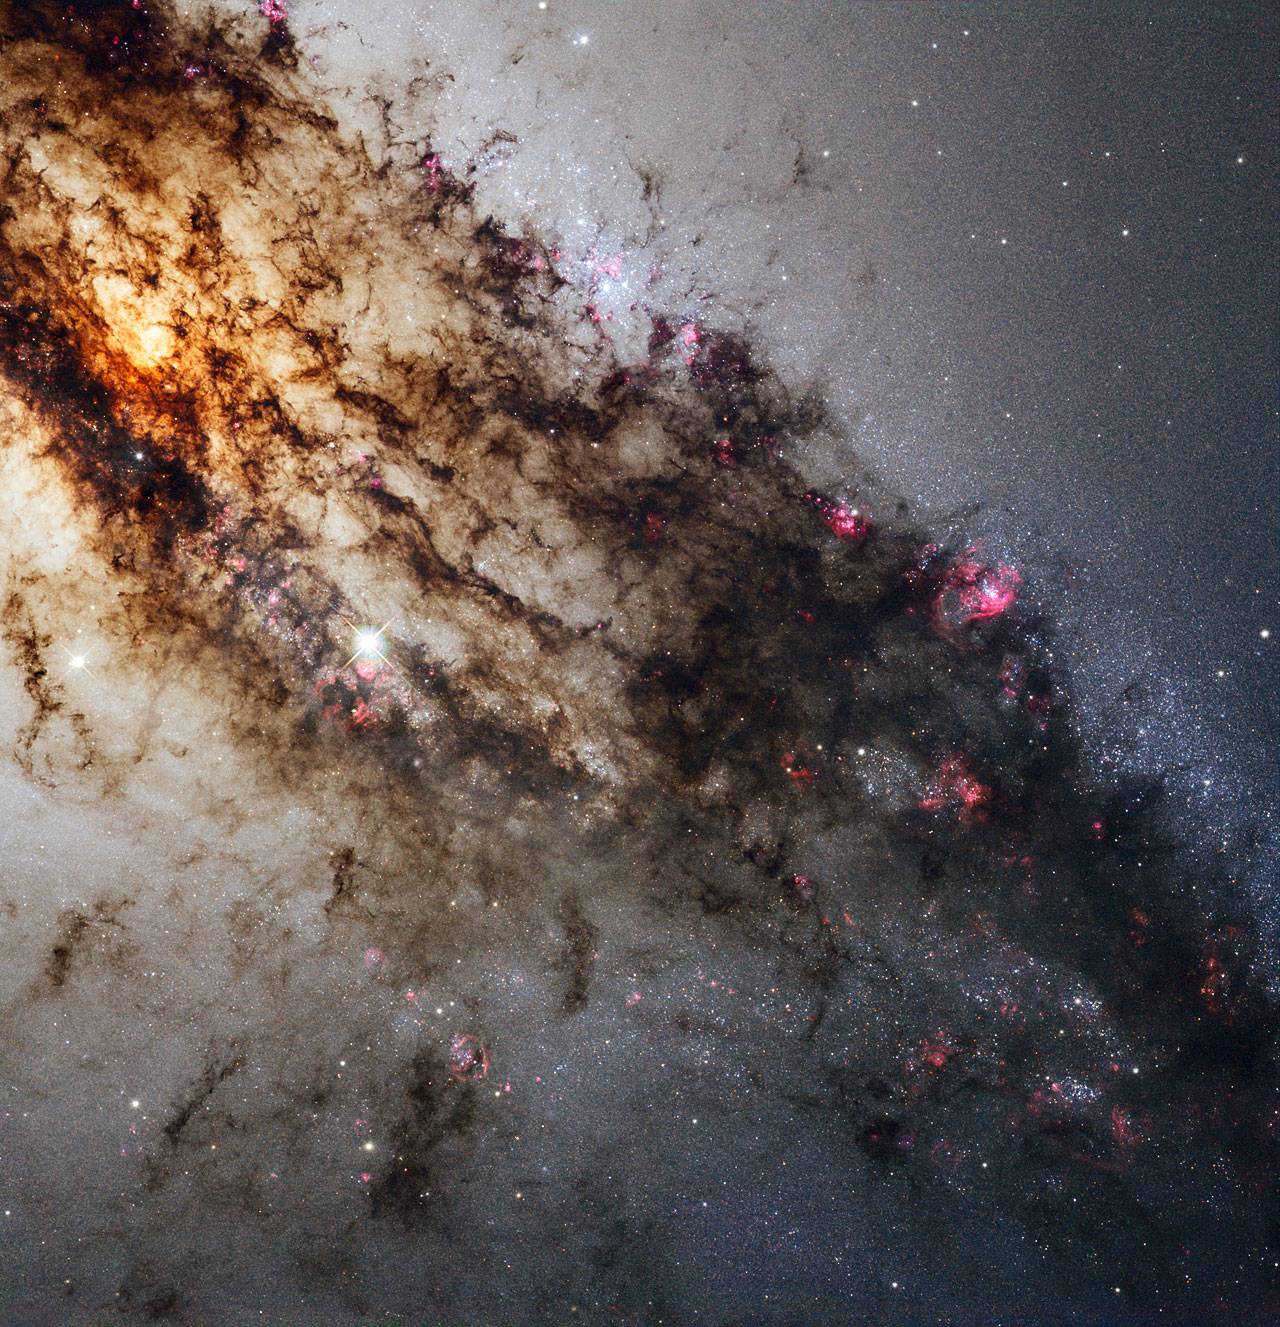 El ‘Hubble’ envía una imagen espectacular de Centauro A